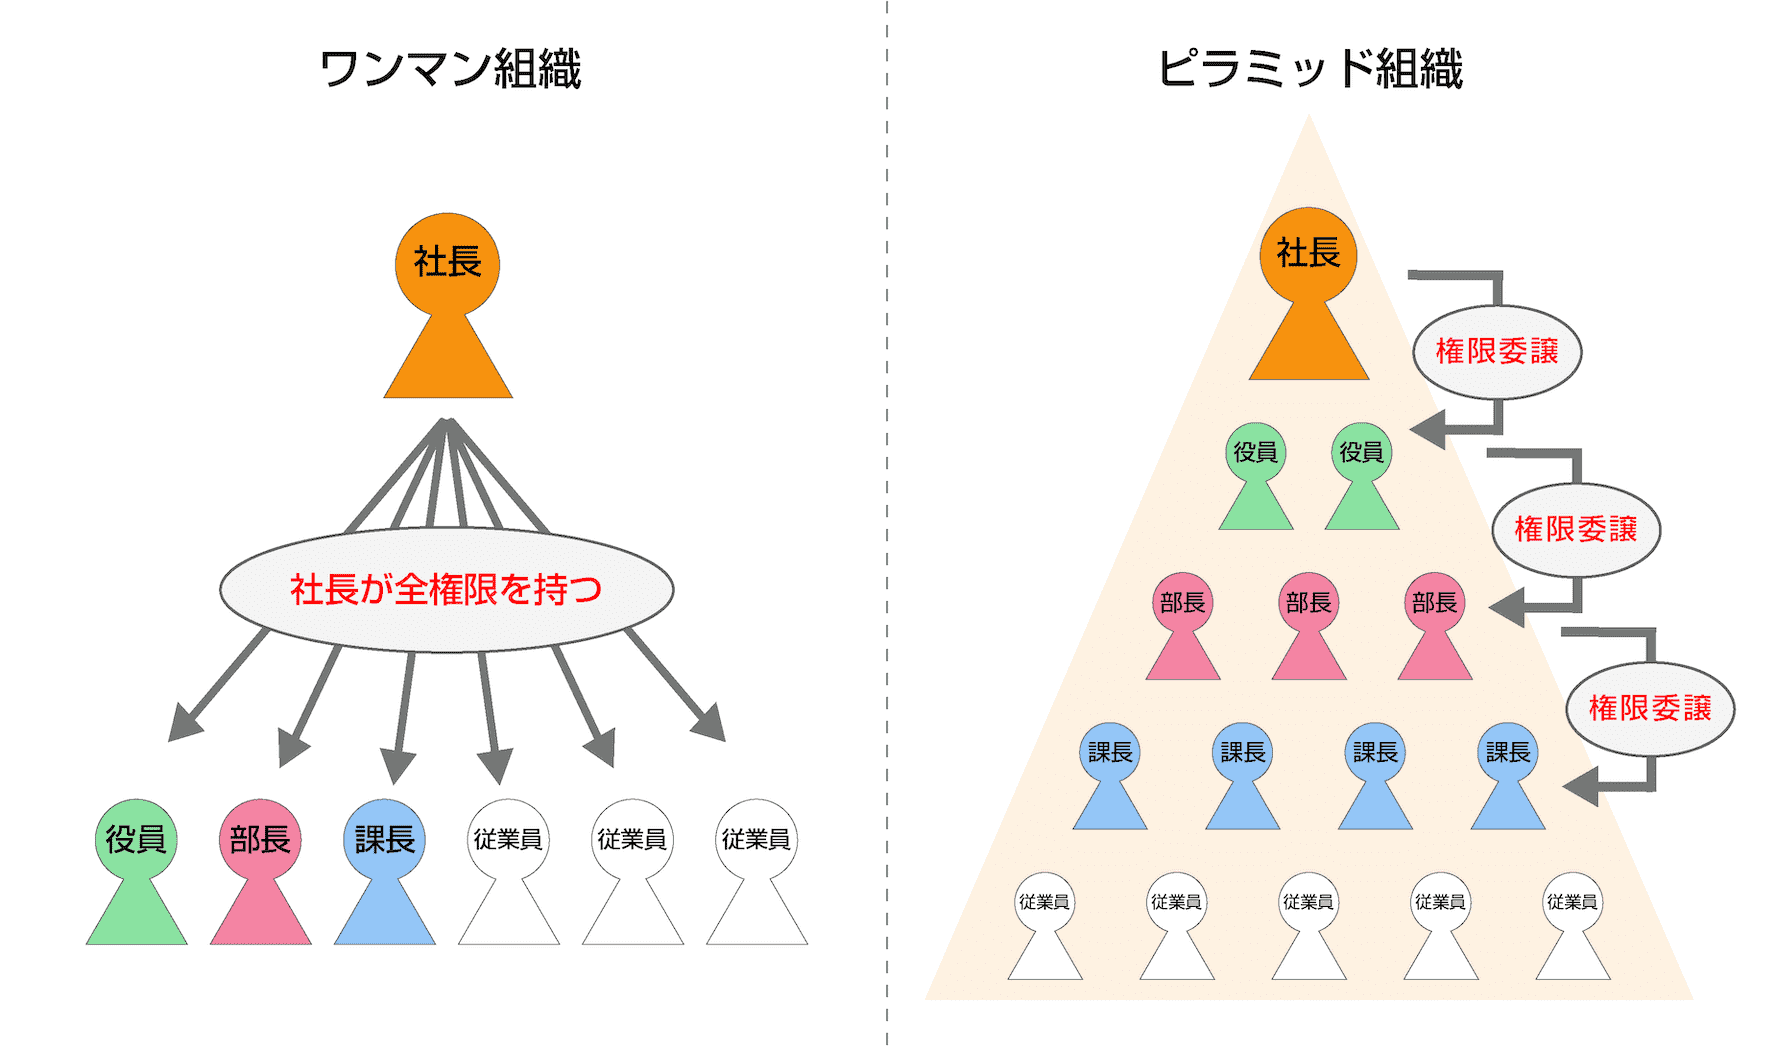 ワンマン組織：社長が全権限を持つ ピラミッド組織：上から下へ権限委譲